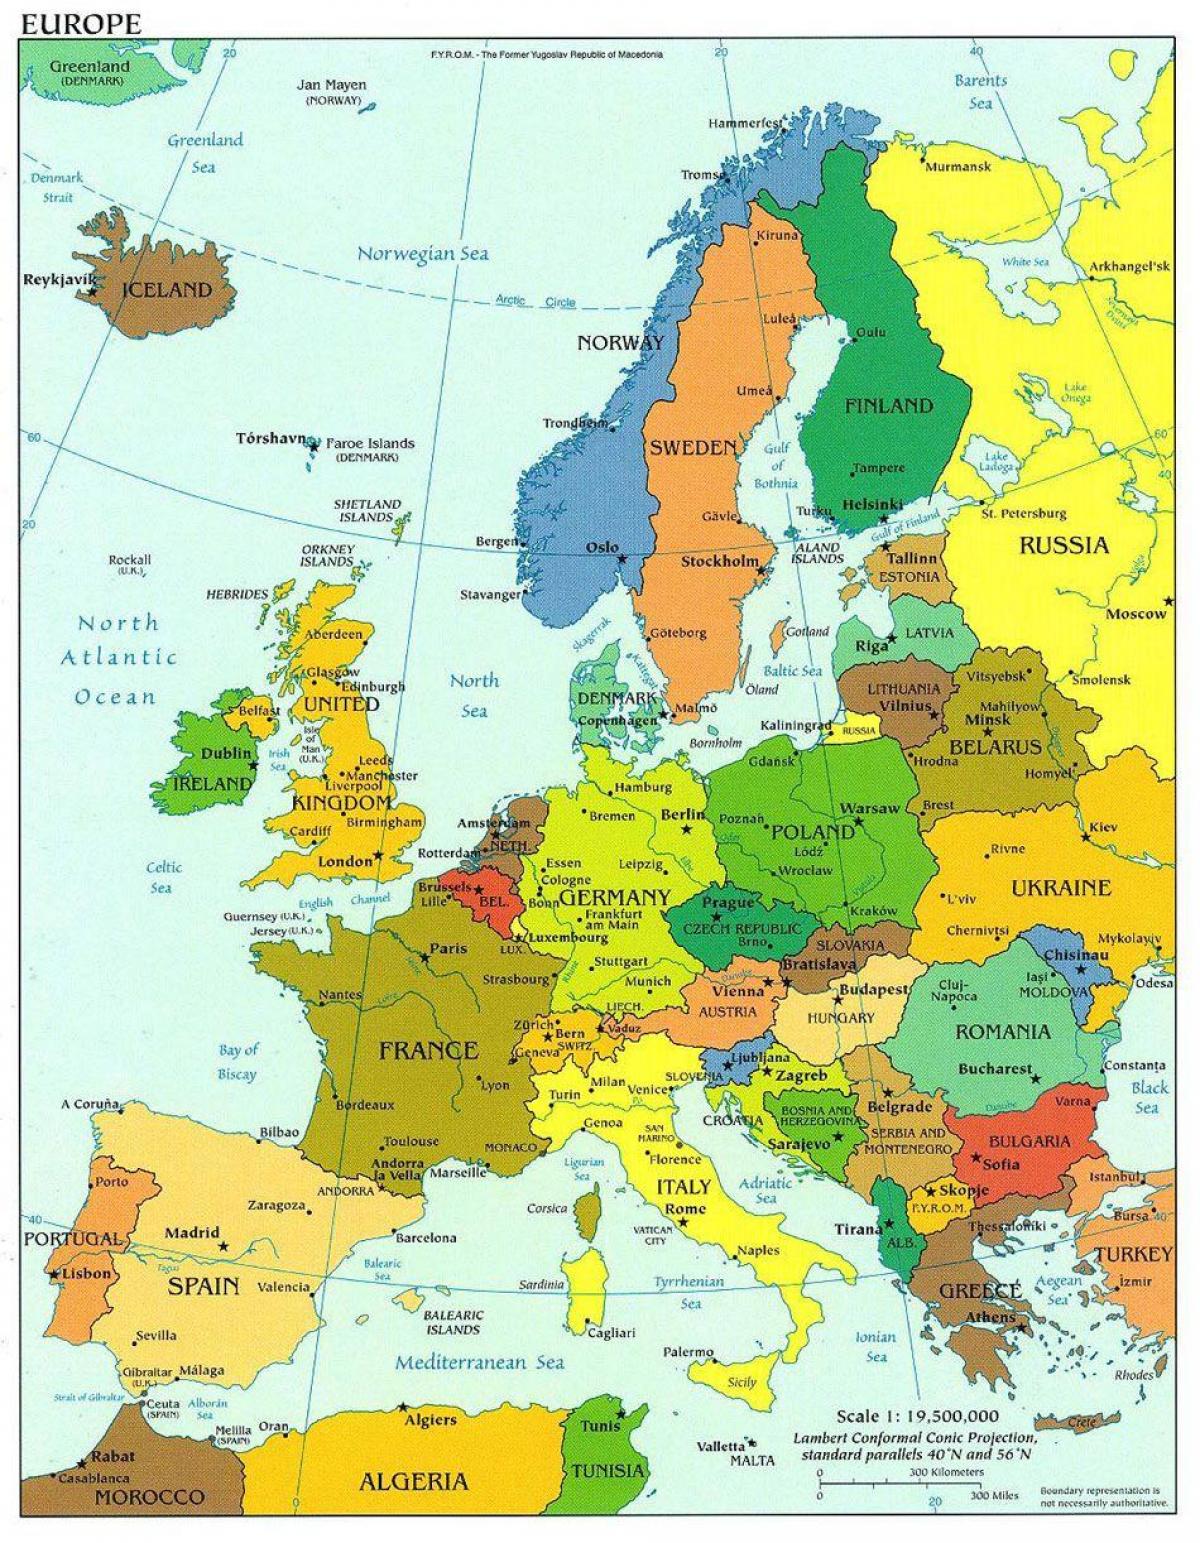 ევროპის რუკა გვიჩვენებს, დანია